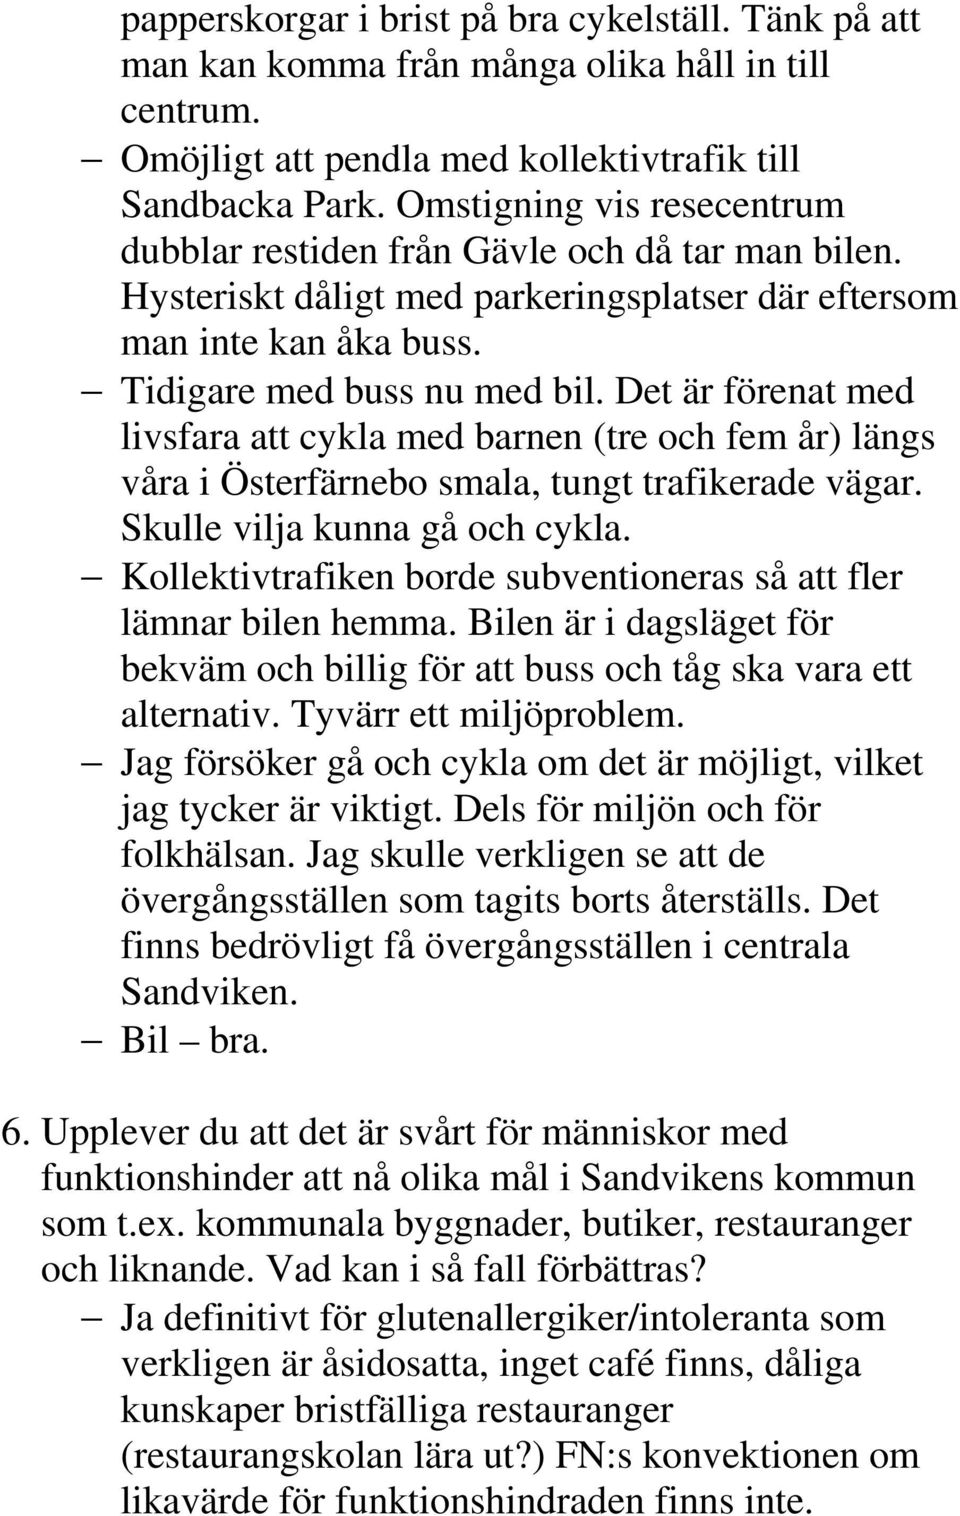 Det är förenat med livsfara att cykla med barnen (tre och fem år) längs våra i Österfärnebo smala, tungt trafikerade vägar. Skulle vilja kunna gå och cykla.